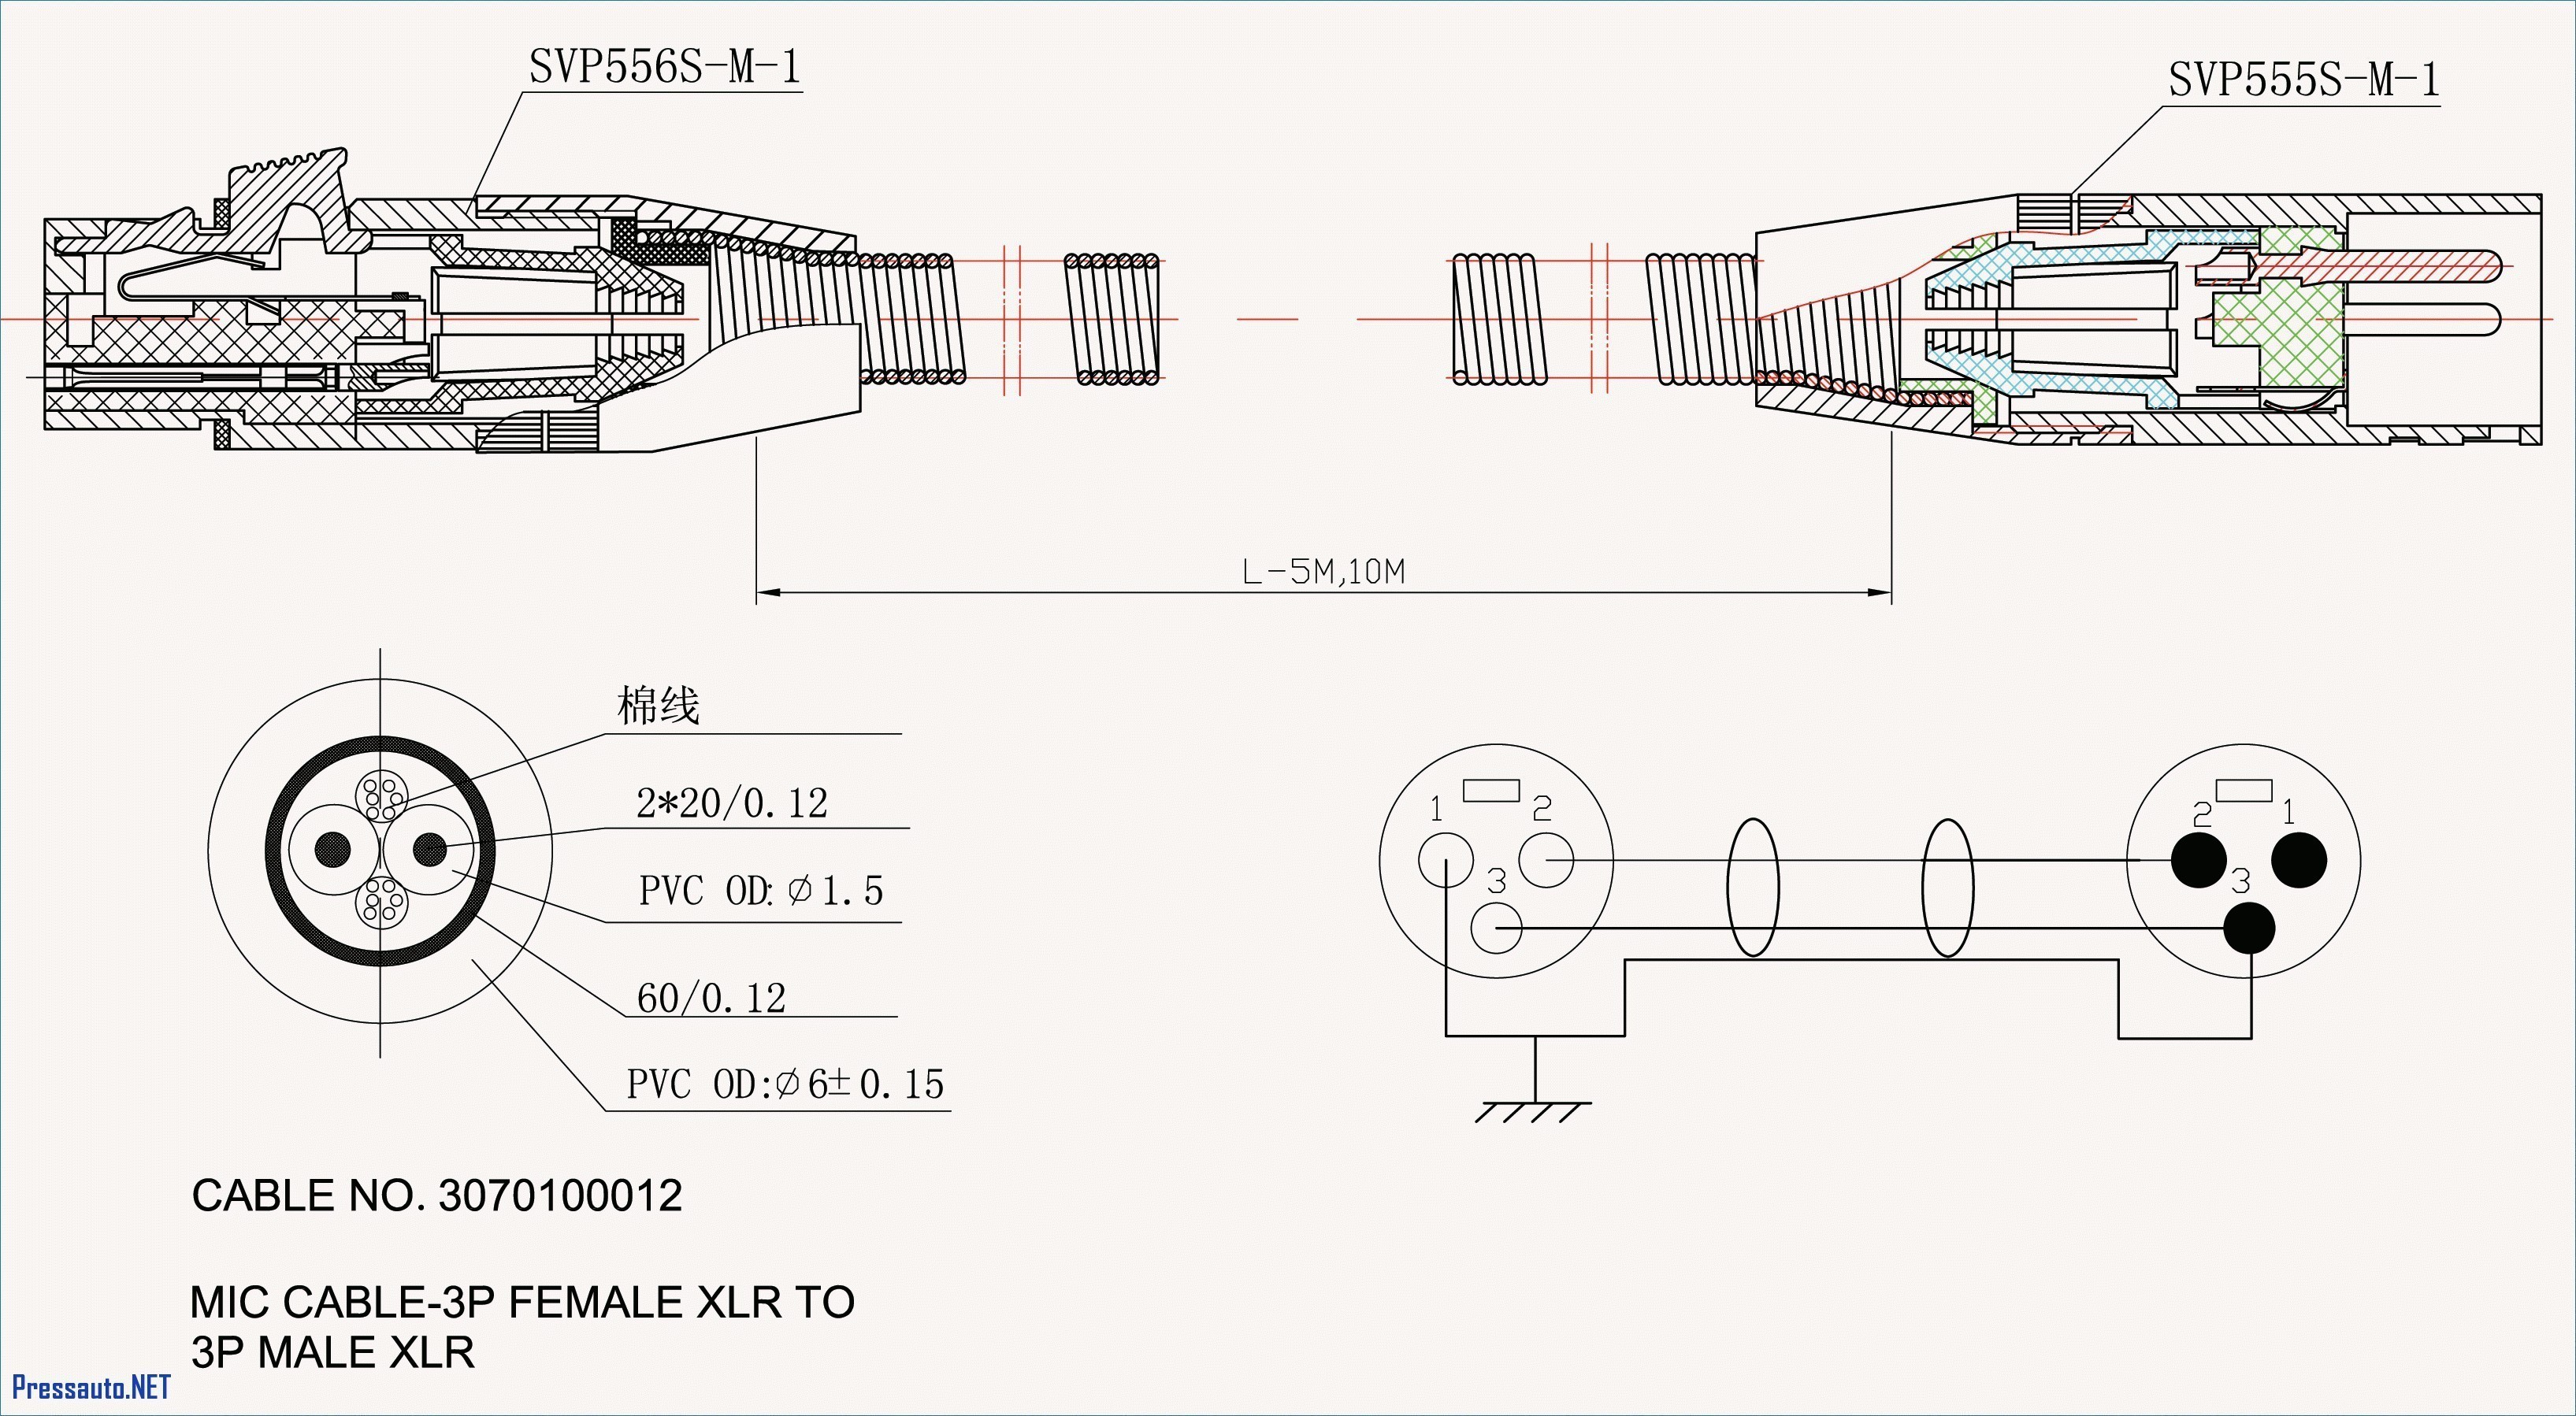 Kia Sedona Wiring Diagram F2339 Wire Diagram Allis Chalmers B12 Of Kia Sedona Wiring Diagram